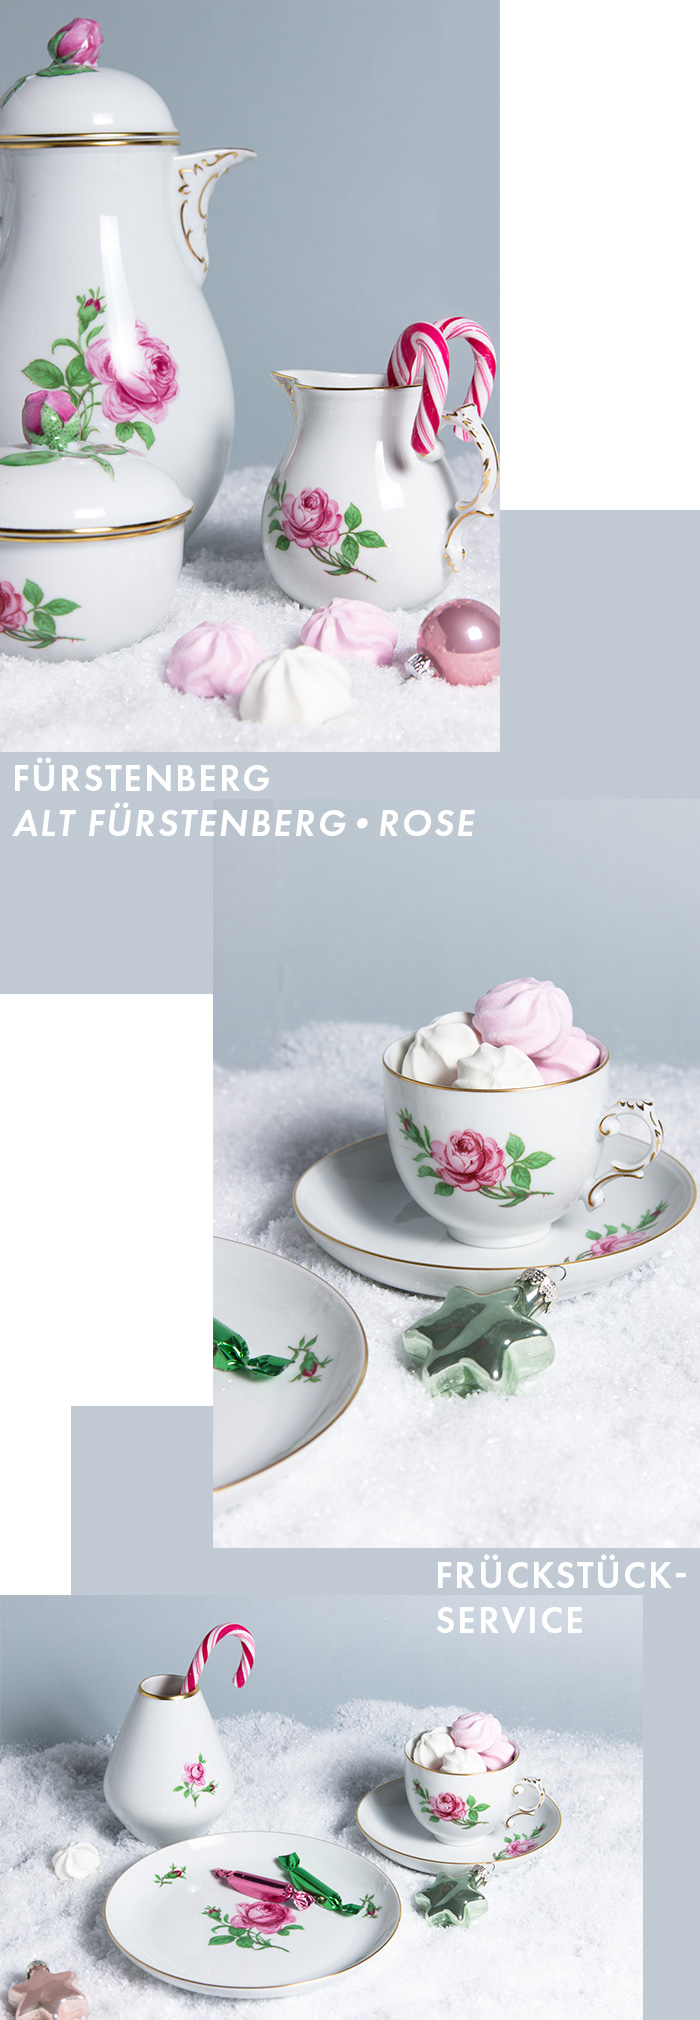 Exklusives Service - Frühstücks-Service - Alt Fürstenberg - Rose